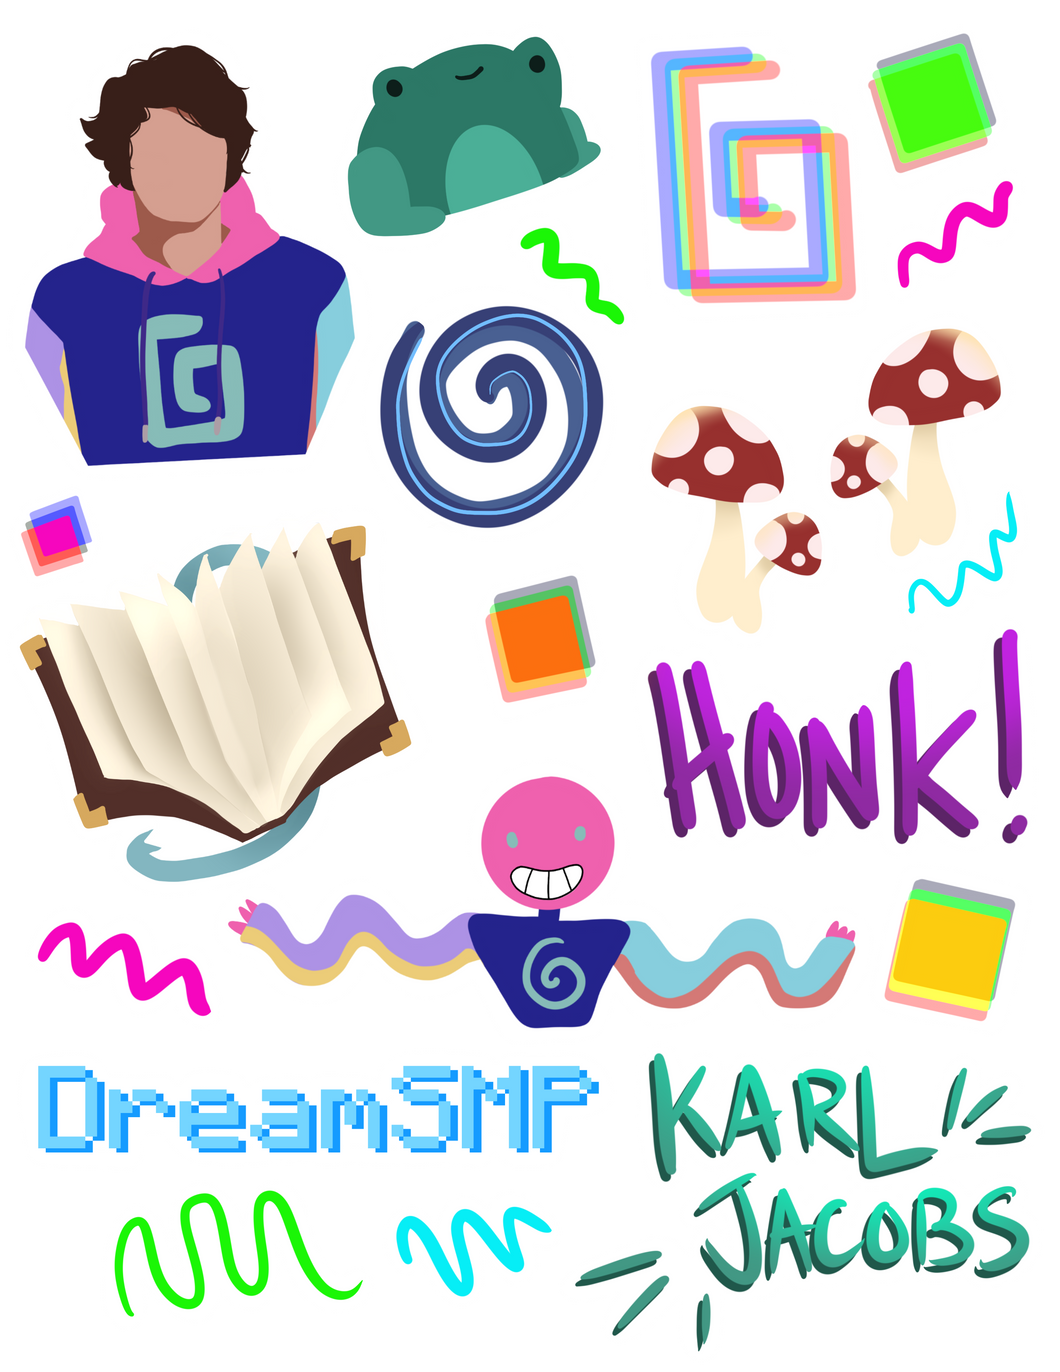 Karl Sticker Pack